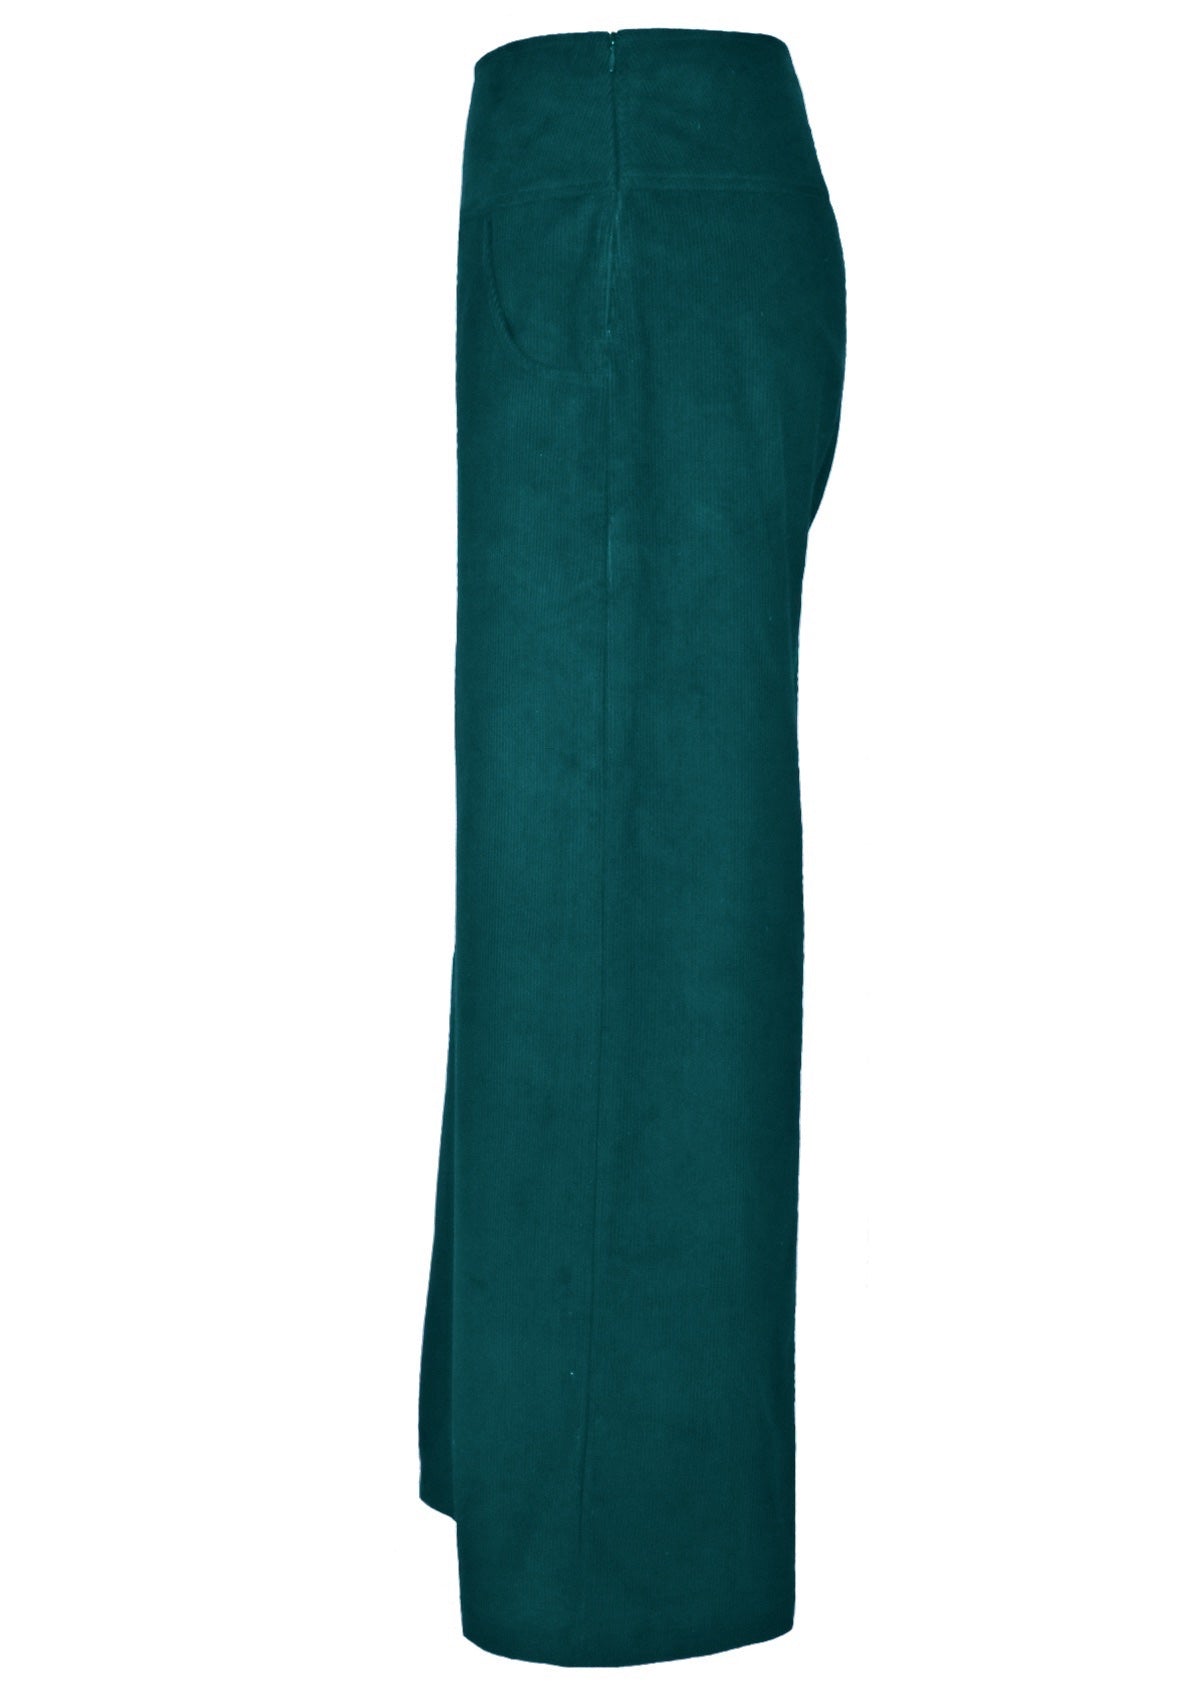 Wide leg 100% cotton corduroy pants feature a side zip. 